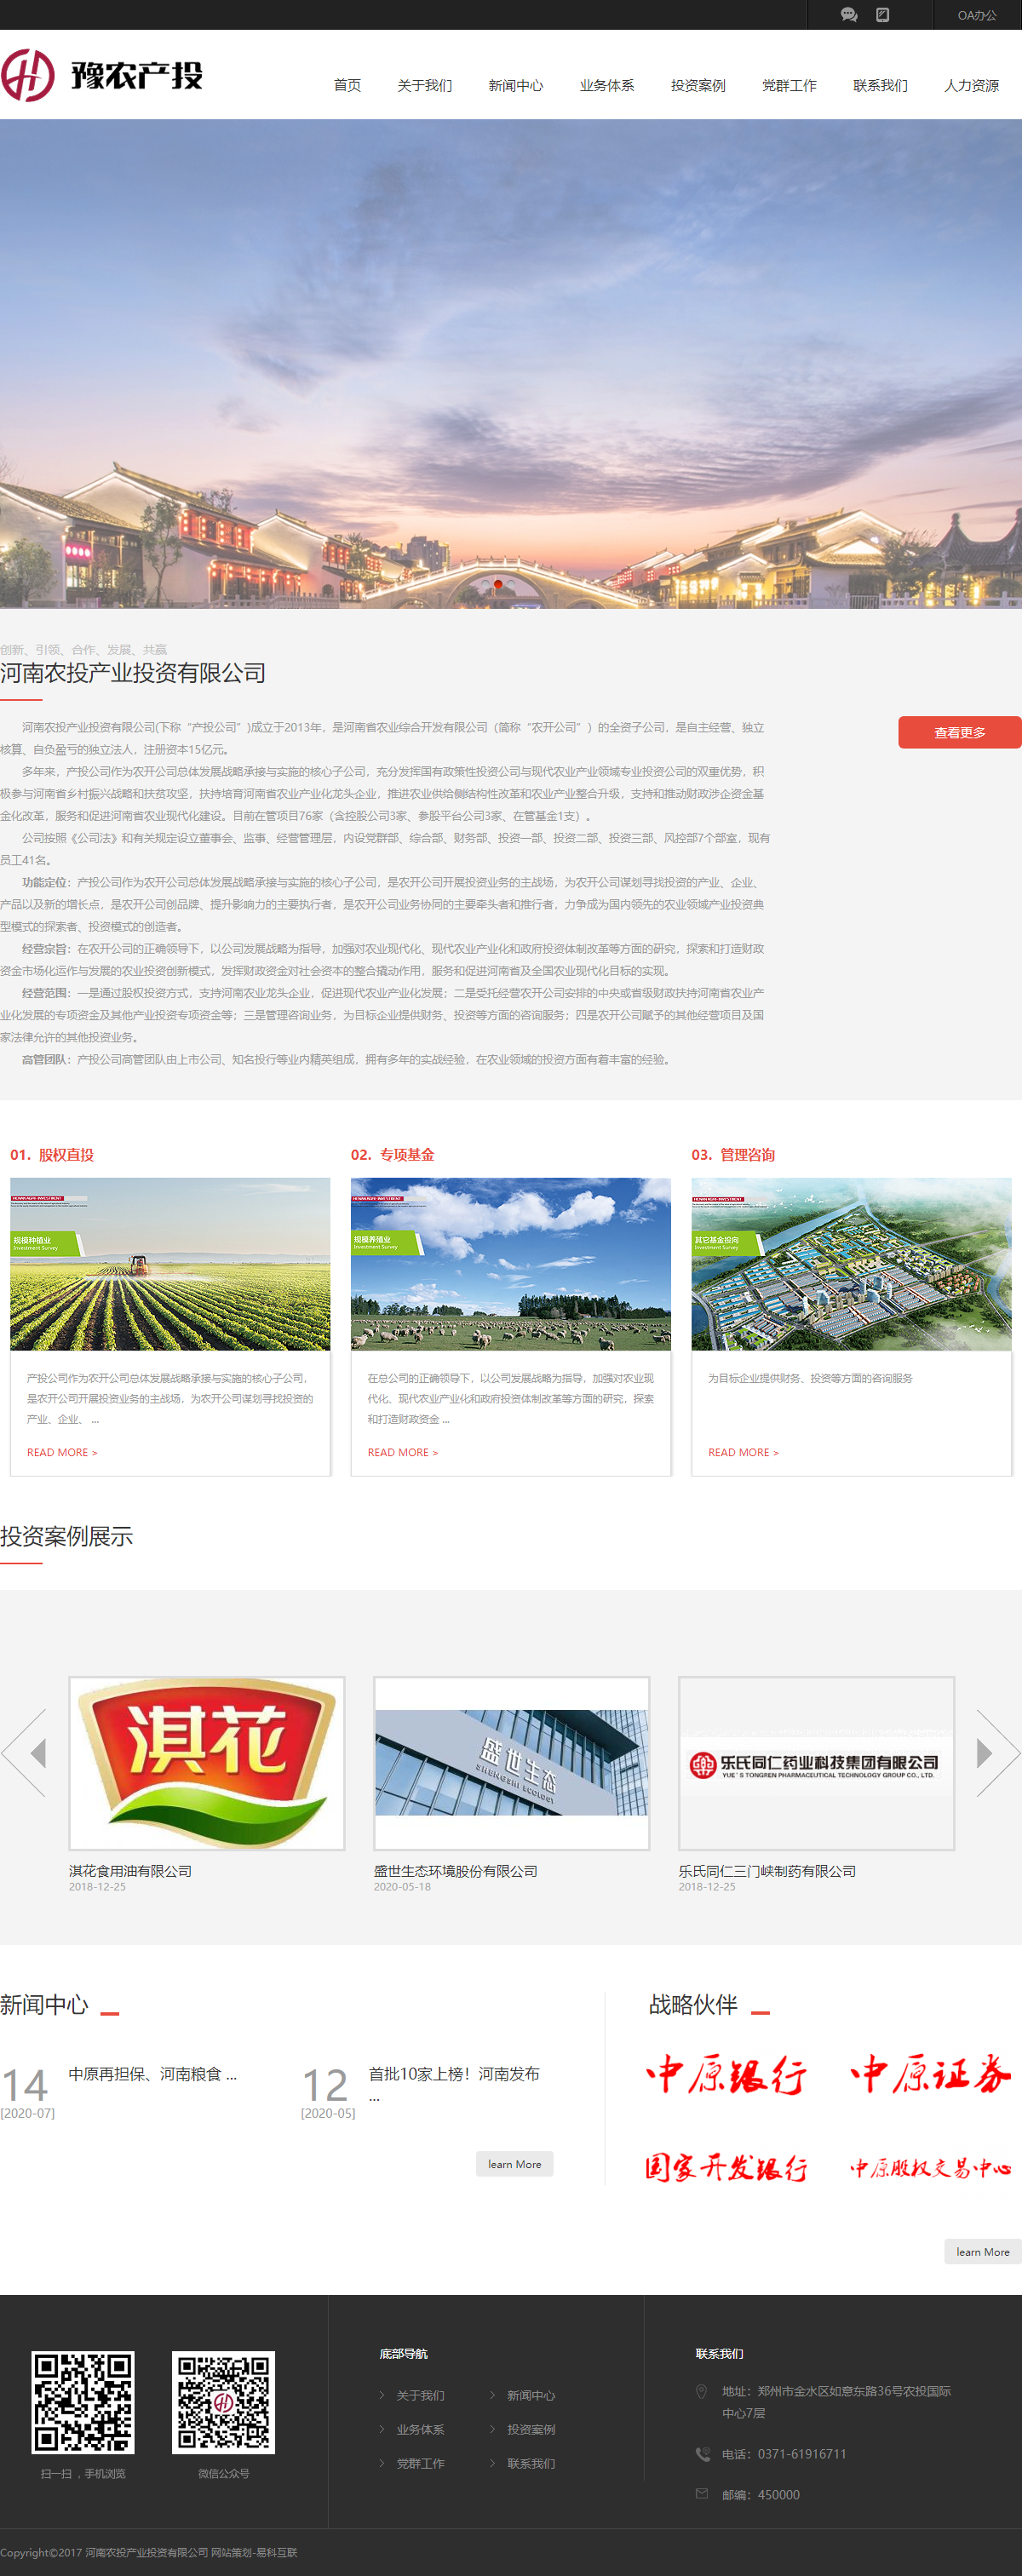 河南农投产业投资有限公司网站案例